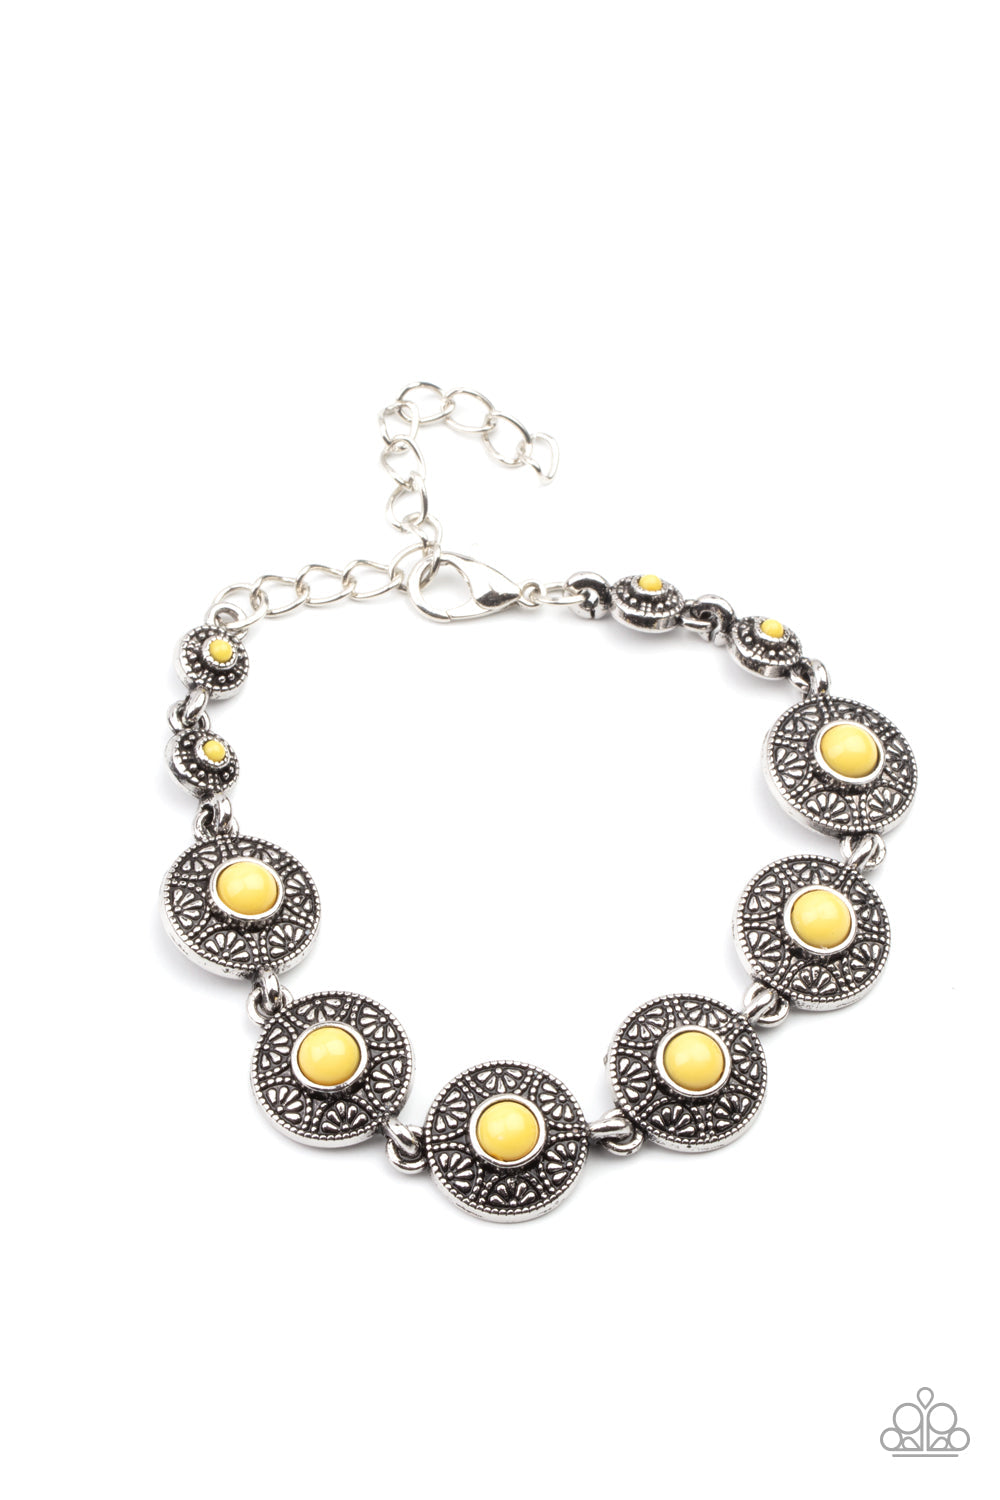 Paparazzi Springtime Special - Yellow - Bracelet - $5 Jewelry with Ashley Swint